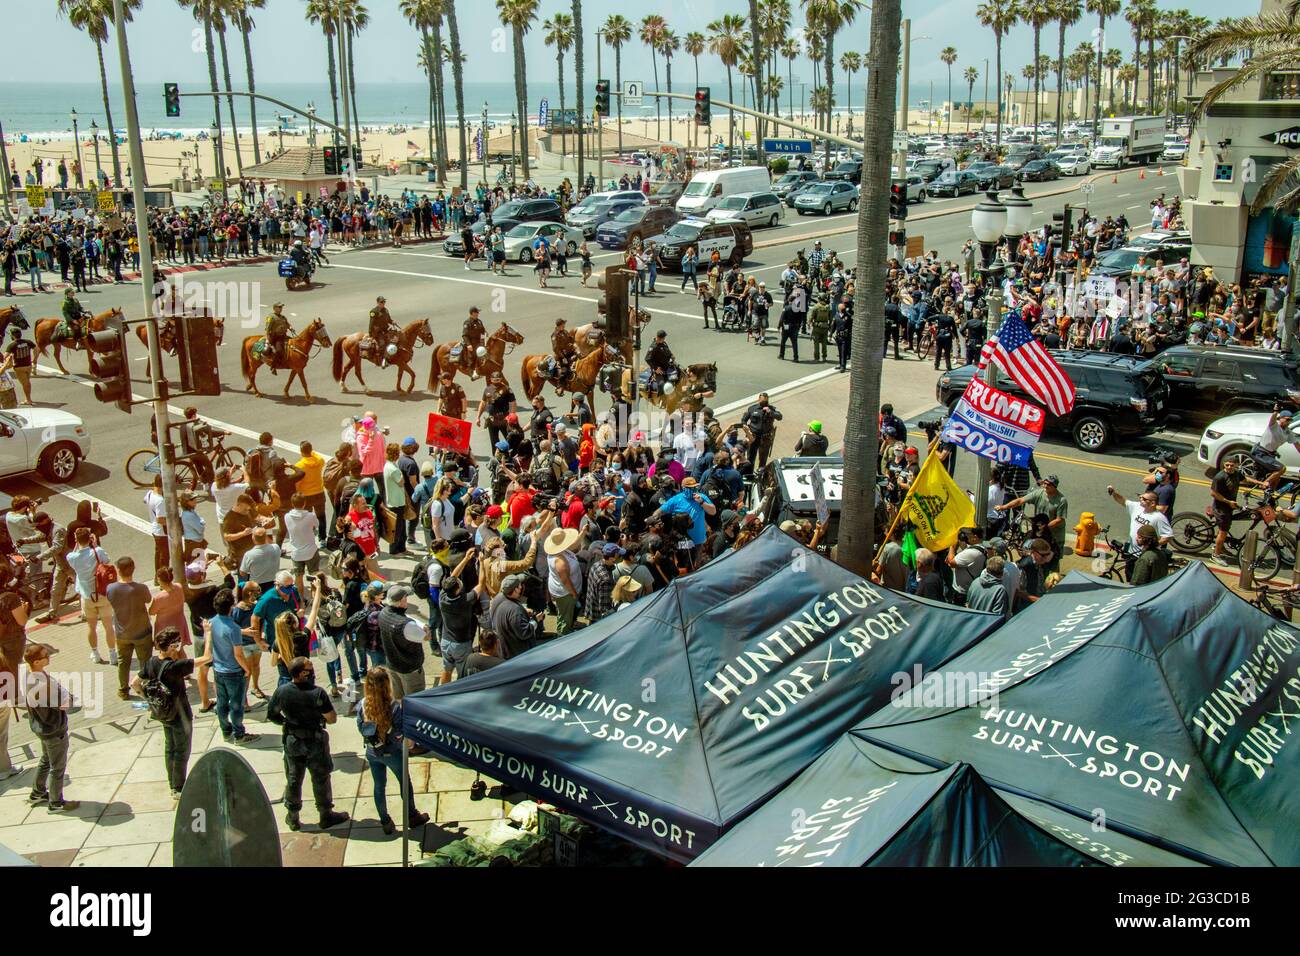 Los diputados del sheriff montado llegan cuando los partidarios caucásicos de Donald Trump se reúnen para protestar por su derrota electoral de 2020 en Huntington Beach, CA. Foto de stock